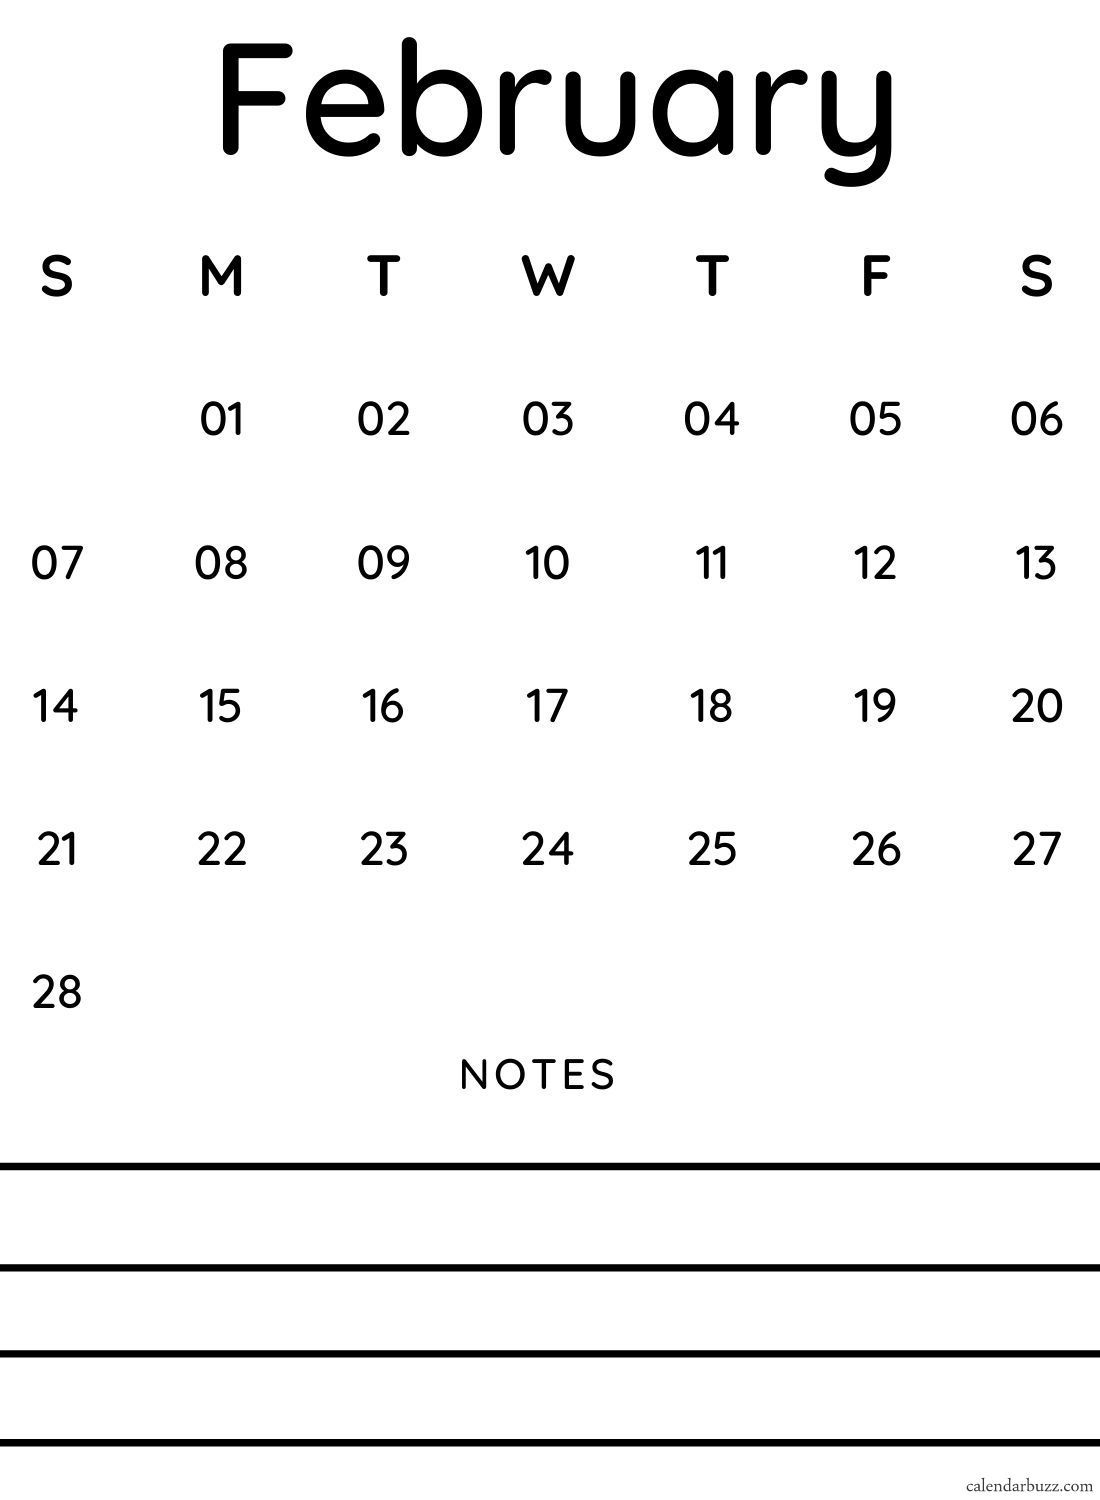 February 2021 Calendar To Make To Do List | February 2021